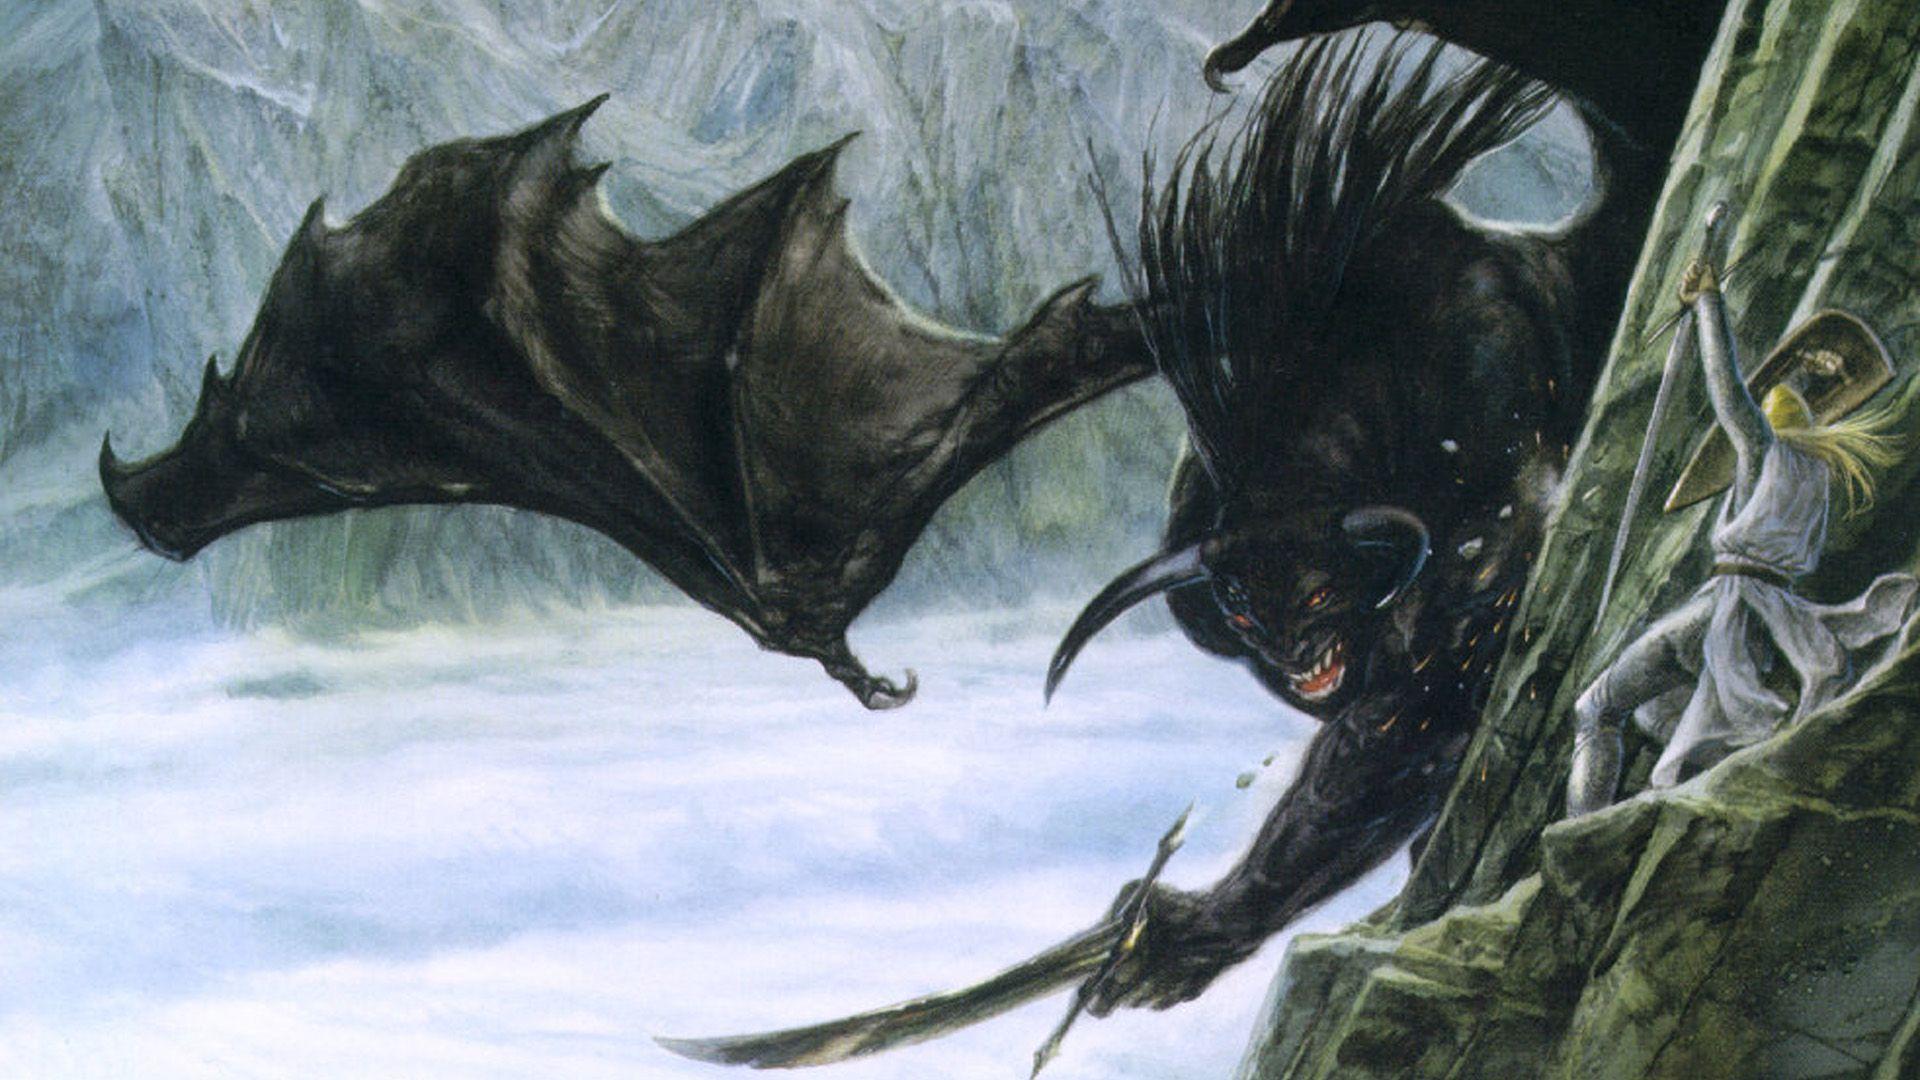 J. R. Tolkien The Silmarillion Fantasy Art John Howe Wallpaper